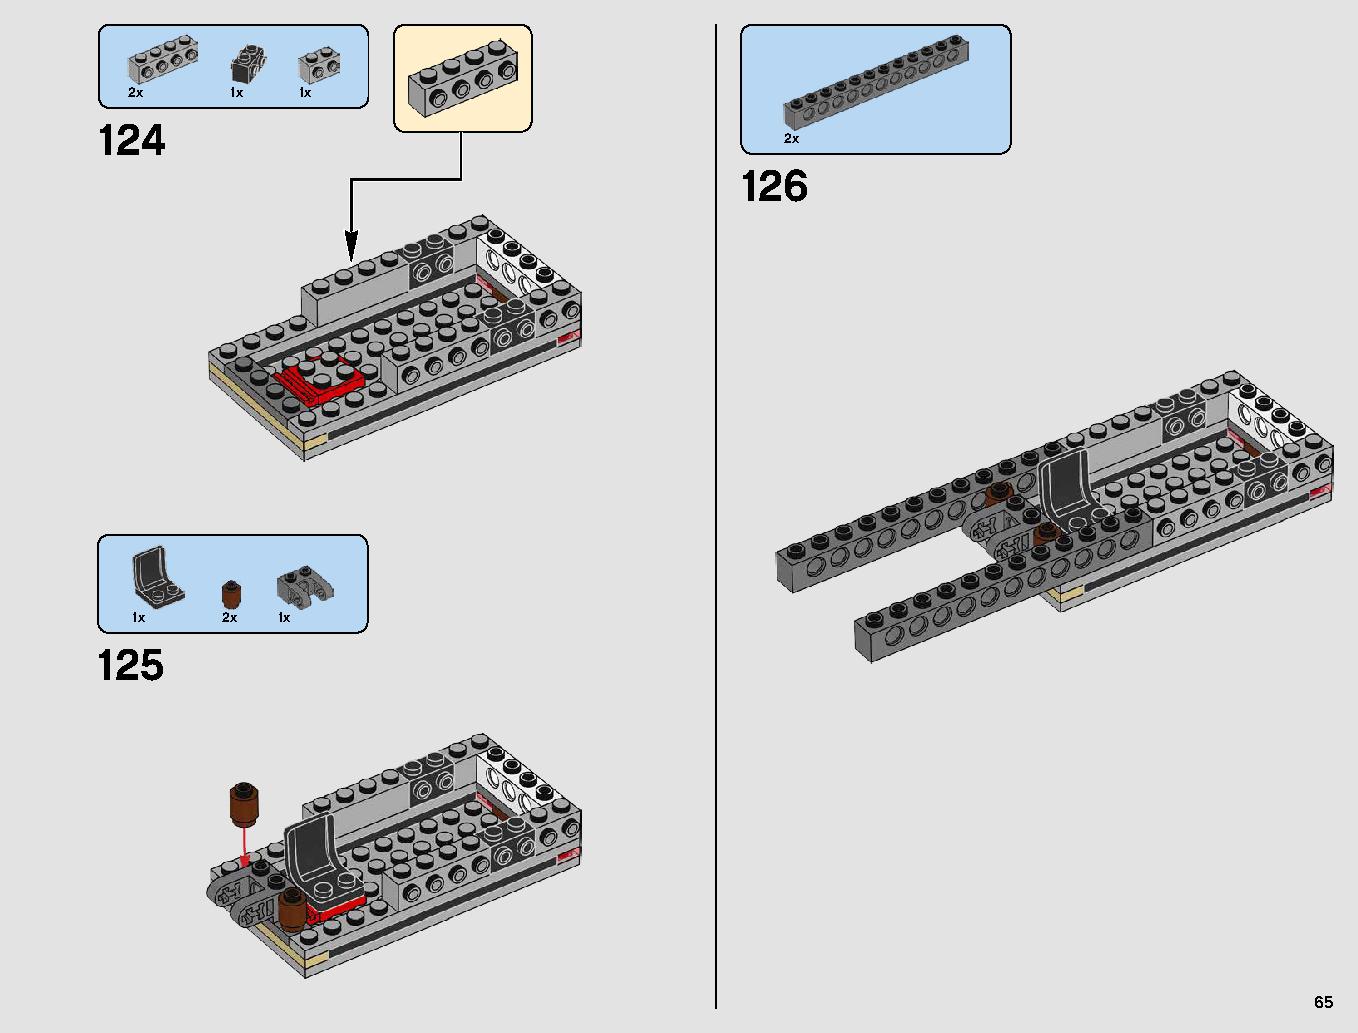 レジスタンス・ボマー 75188 レゴの商品情報 レゴの説明書・組立方法 65 page